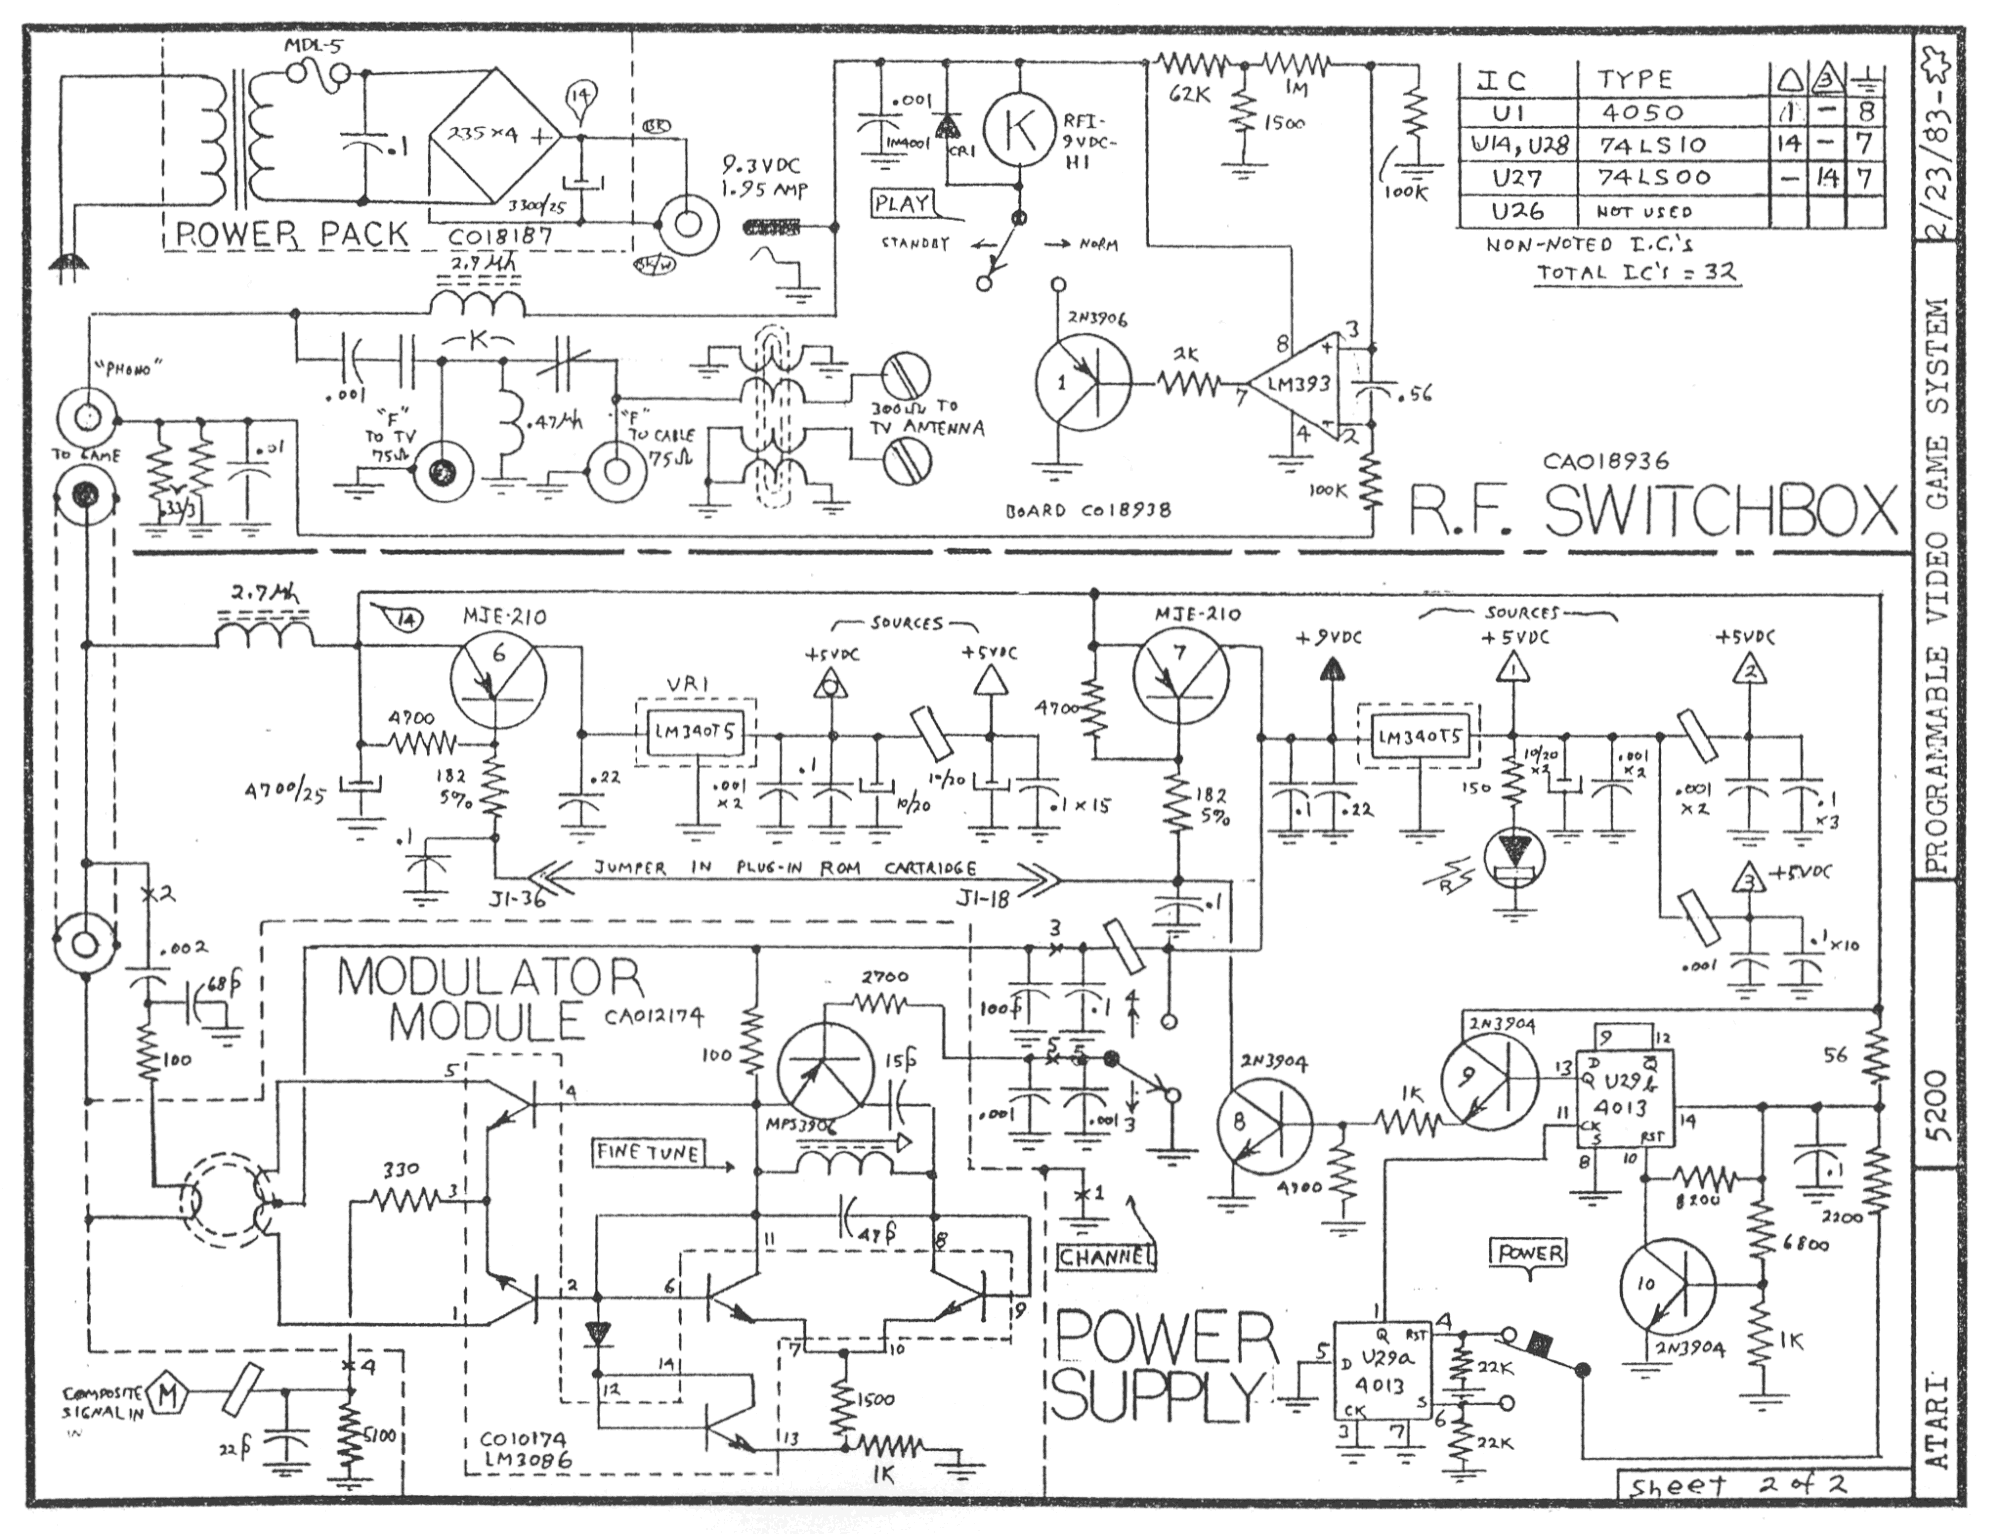 Atari 5200 RF Switchbox Schematic